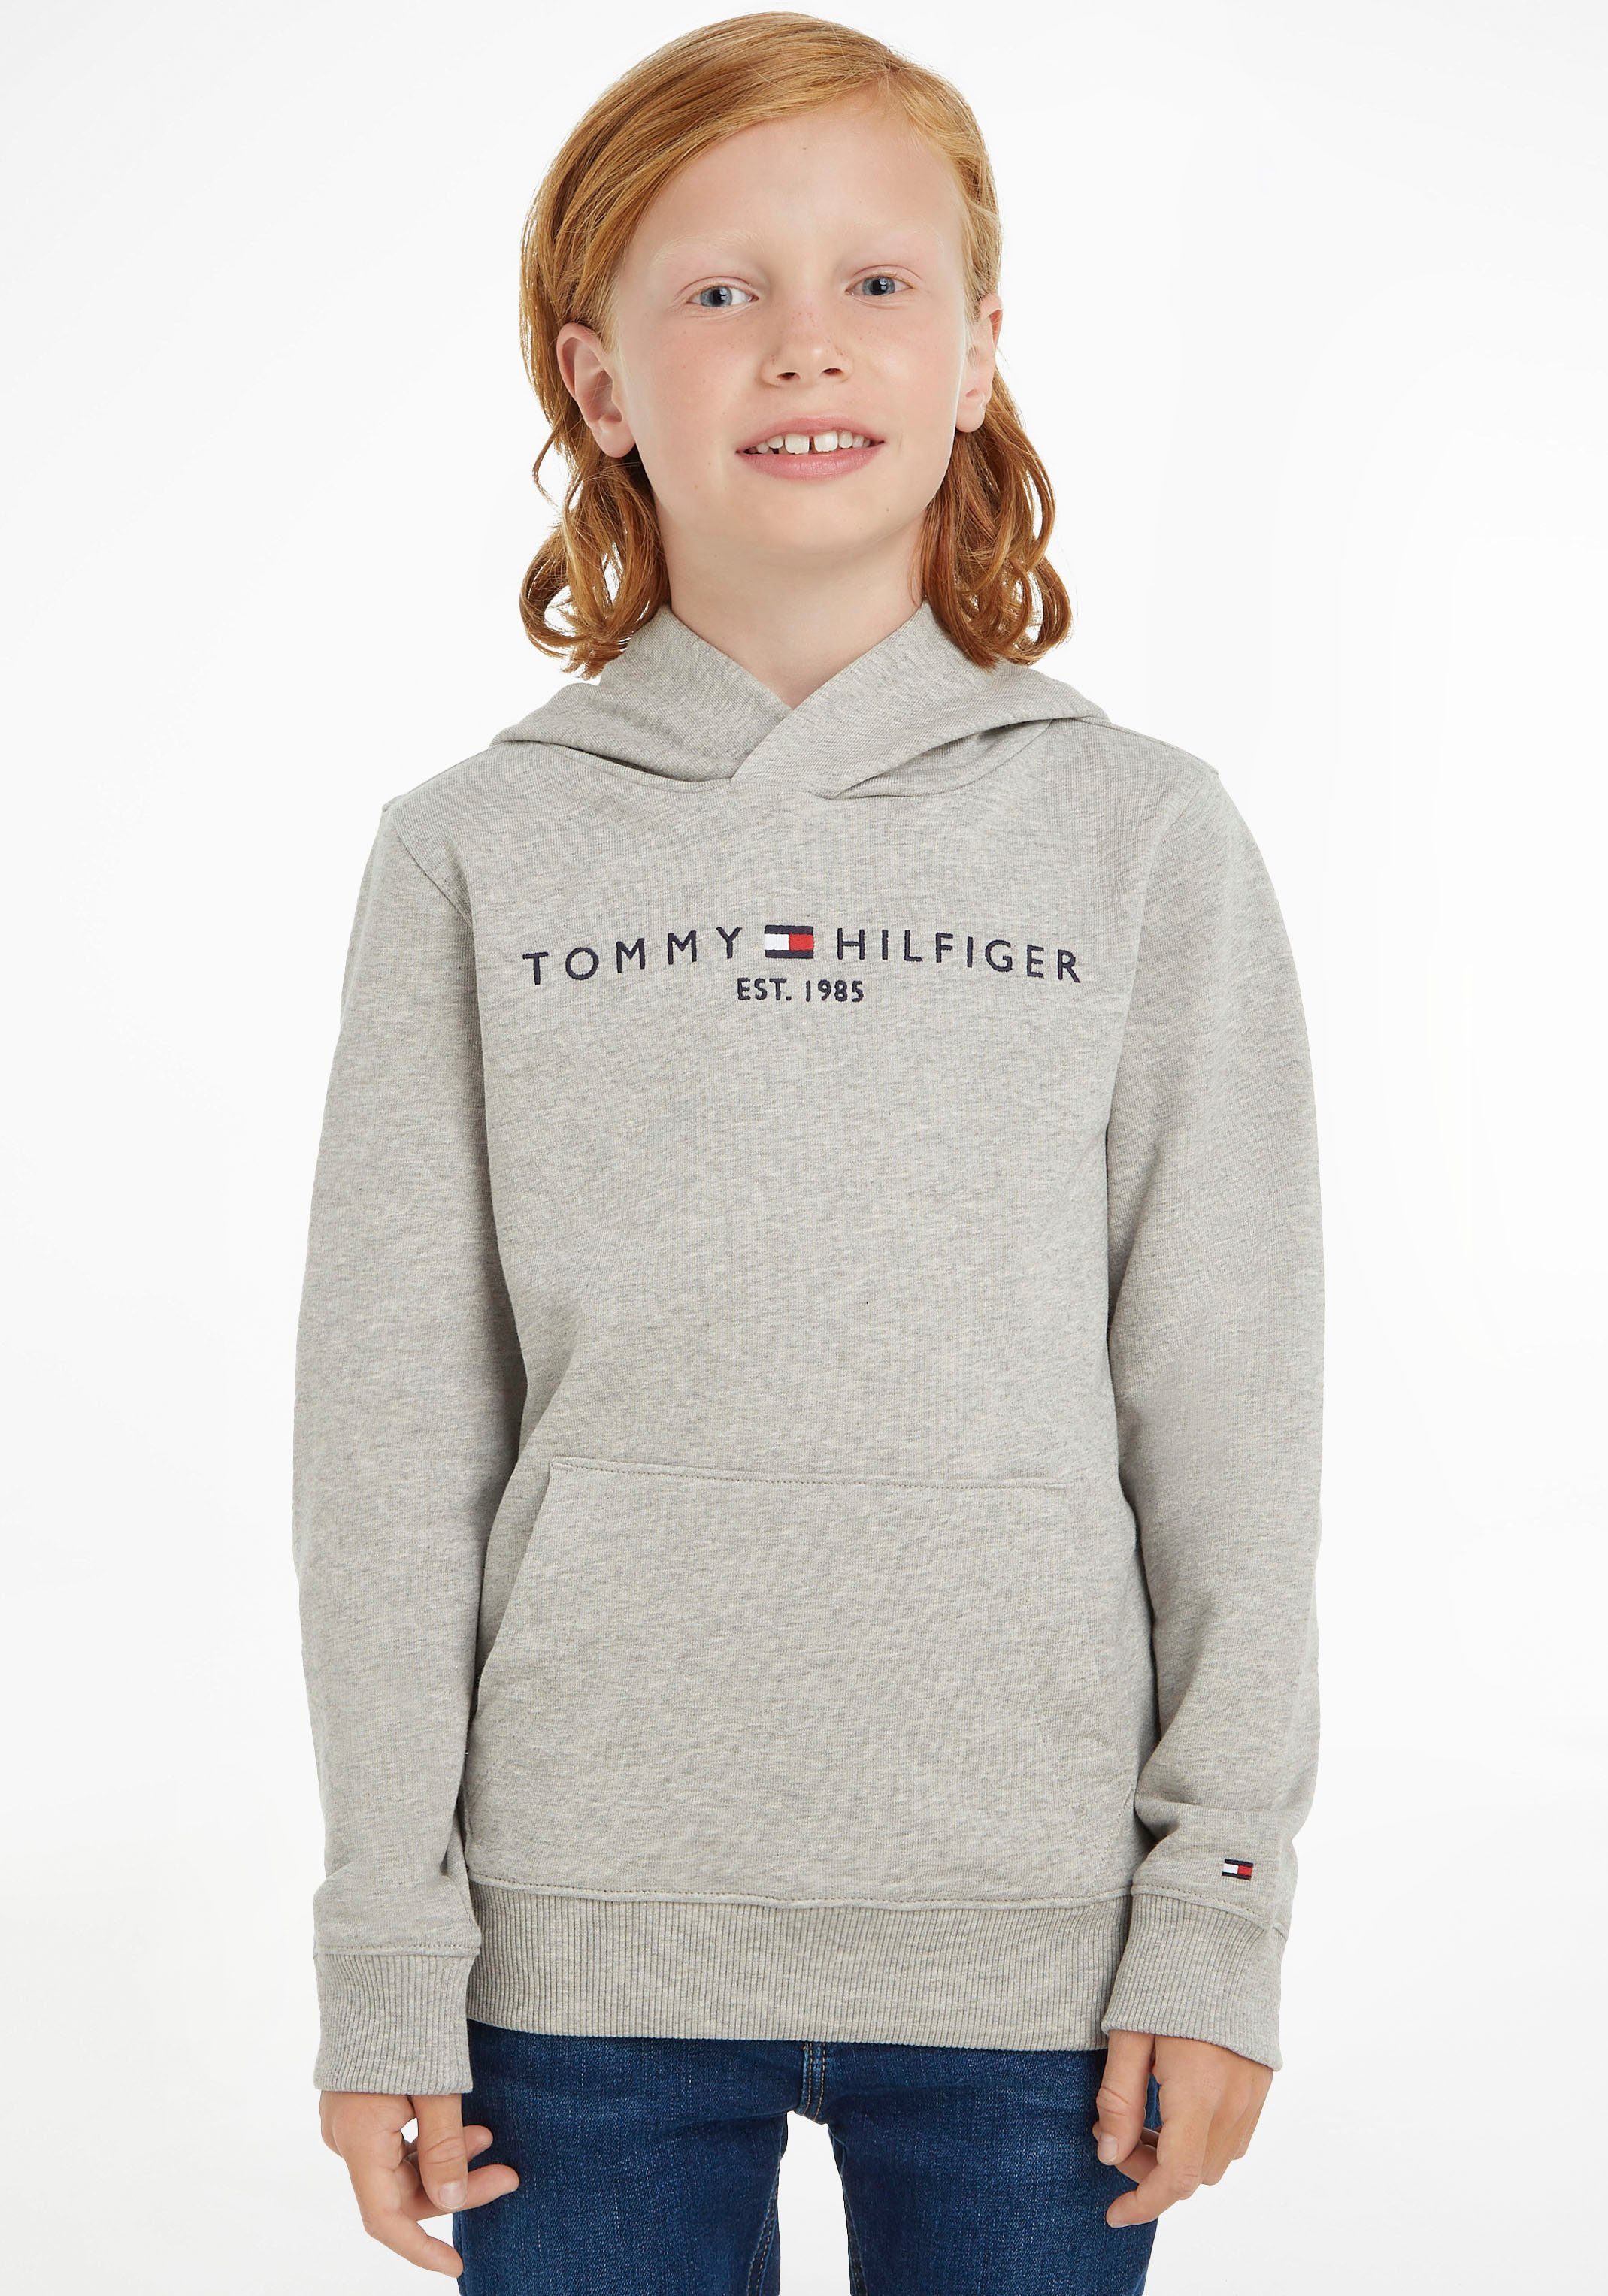 HOODIE für Tommy Kapuzensweatshirt ESSENTIAL Hilfiger Jungen und Mädchen